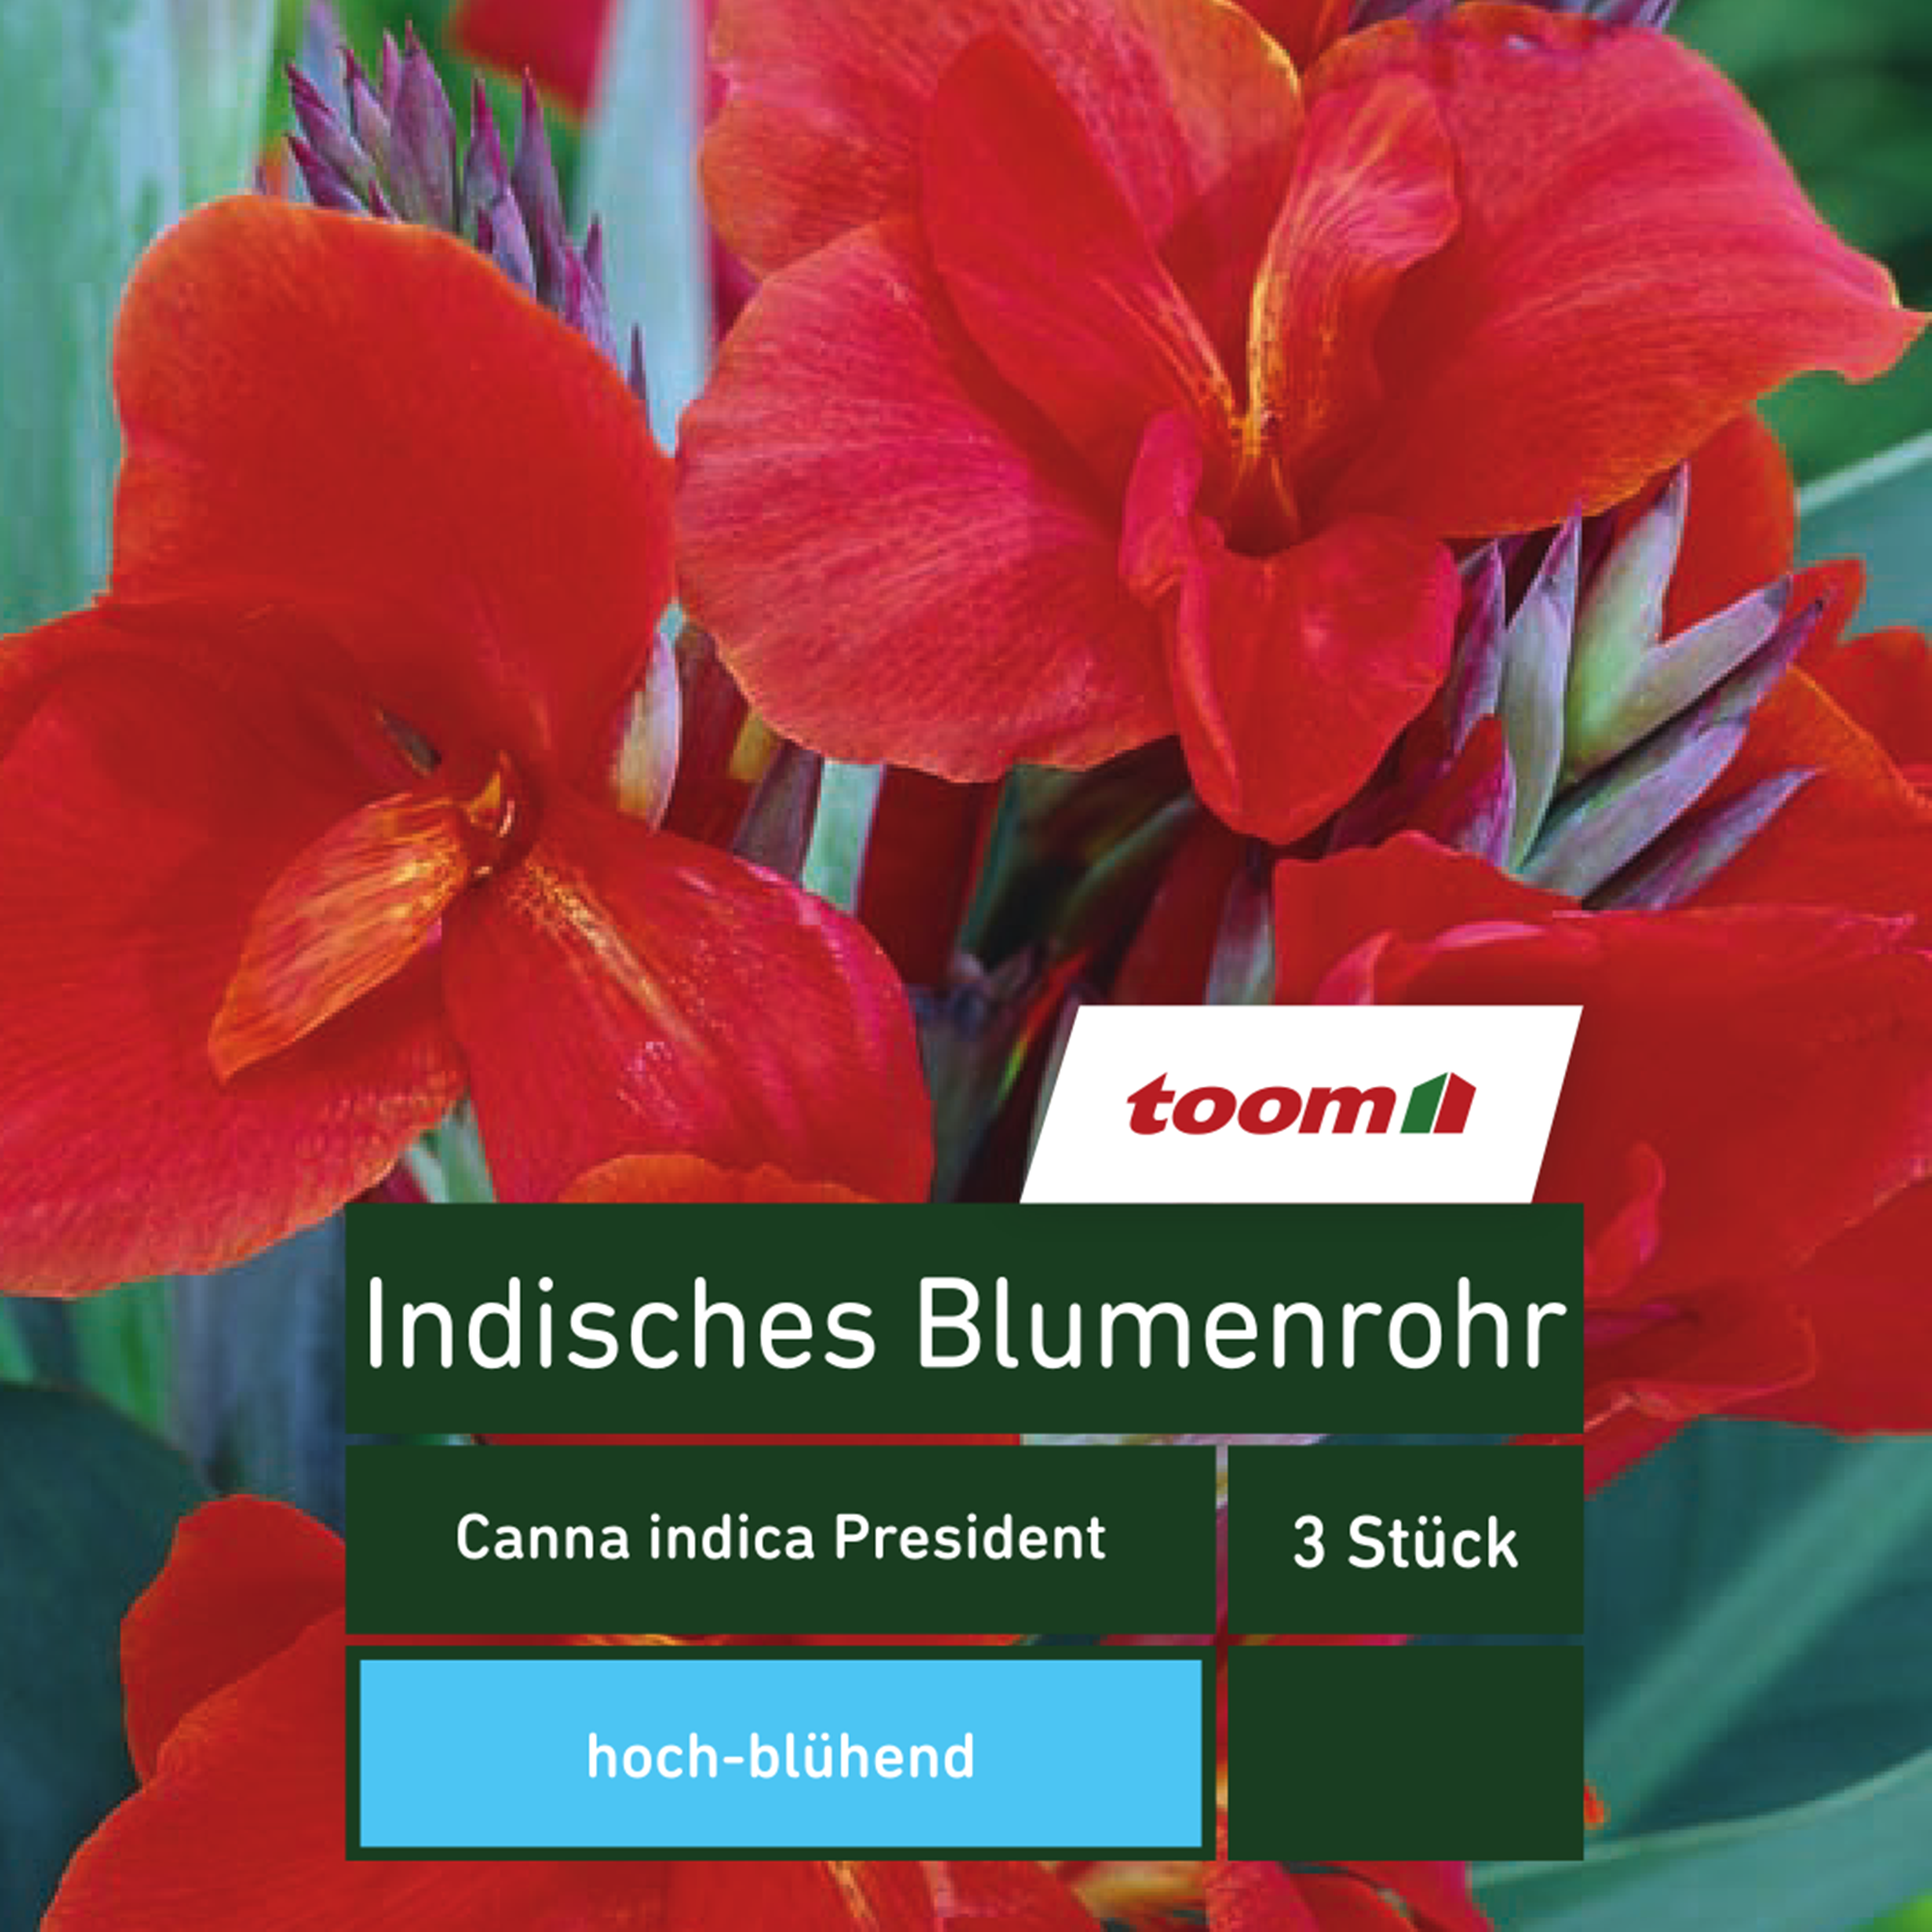 Blumenzwiebel Indisches Blumenrohr 'President' 3 Stück + product picture